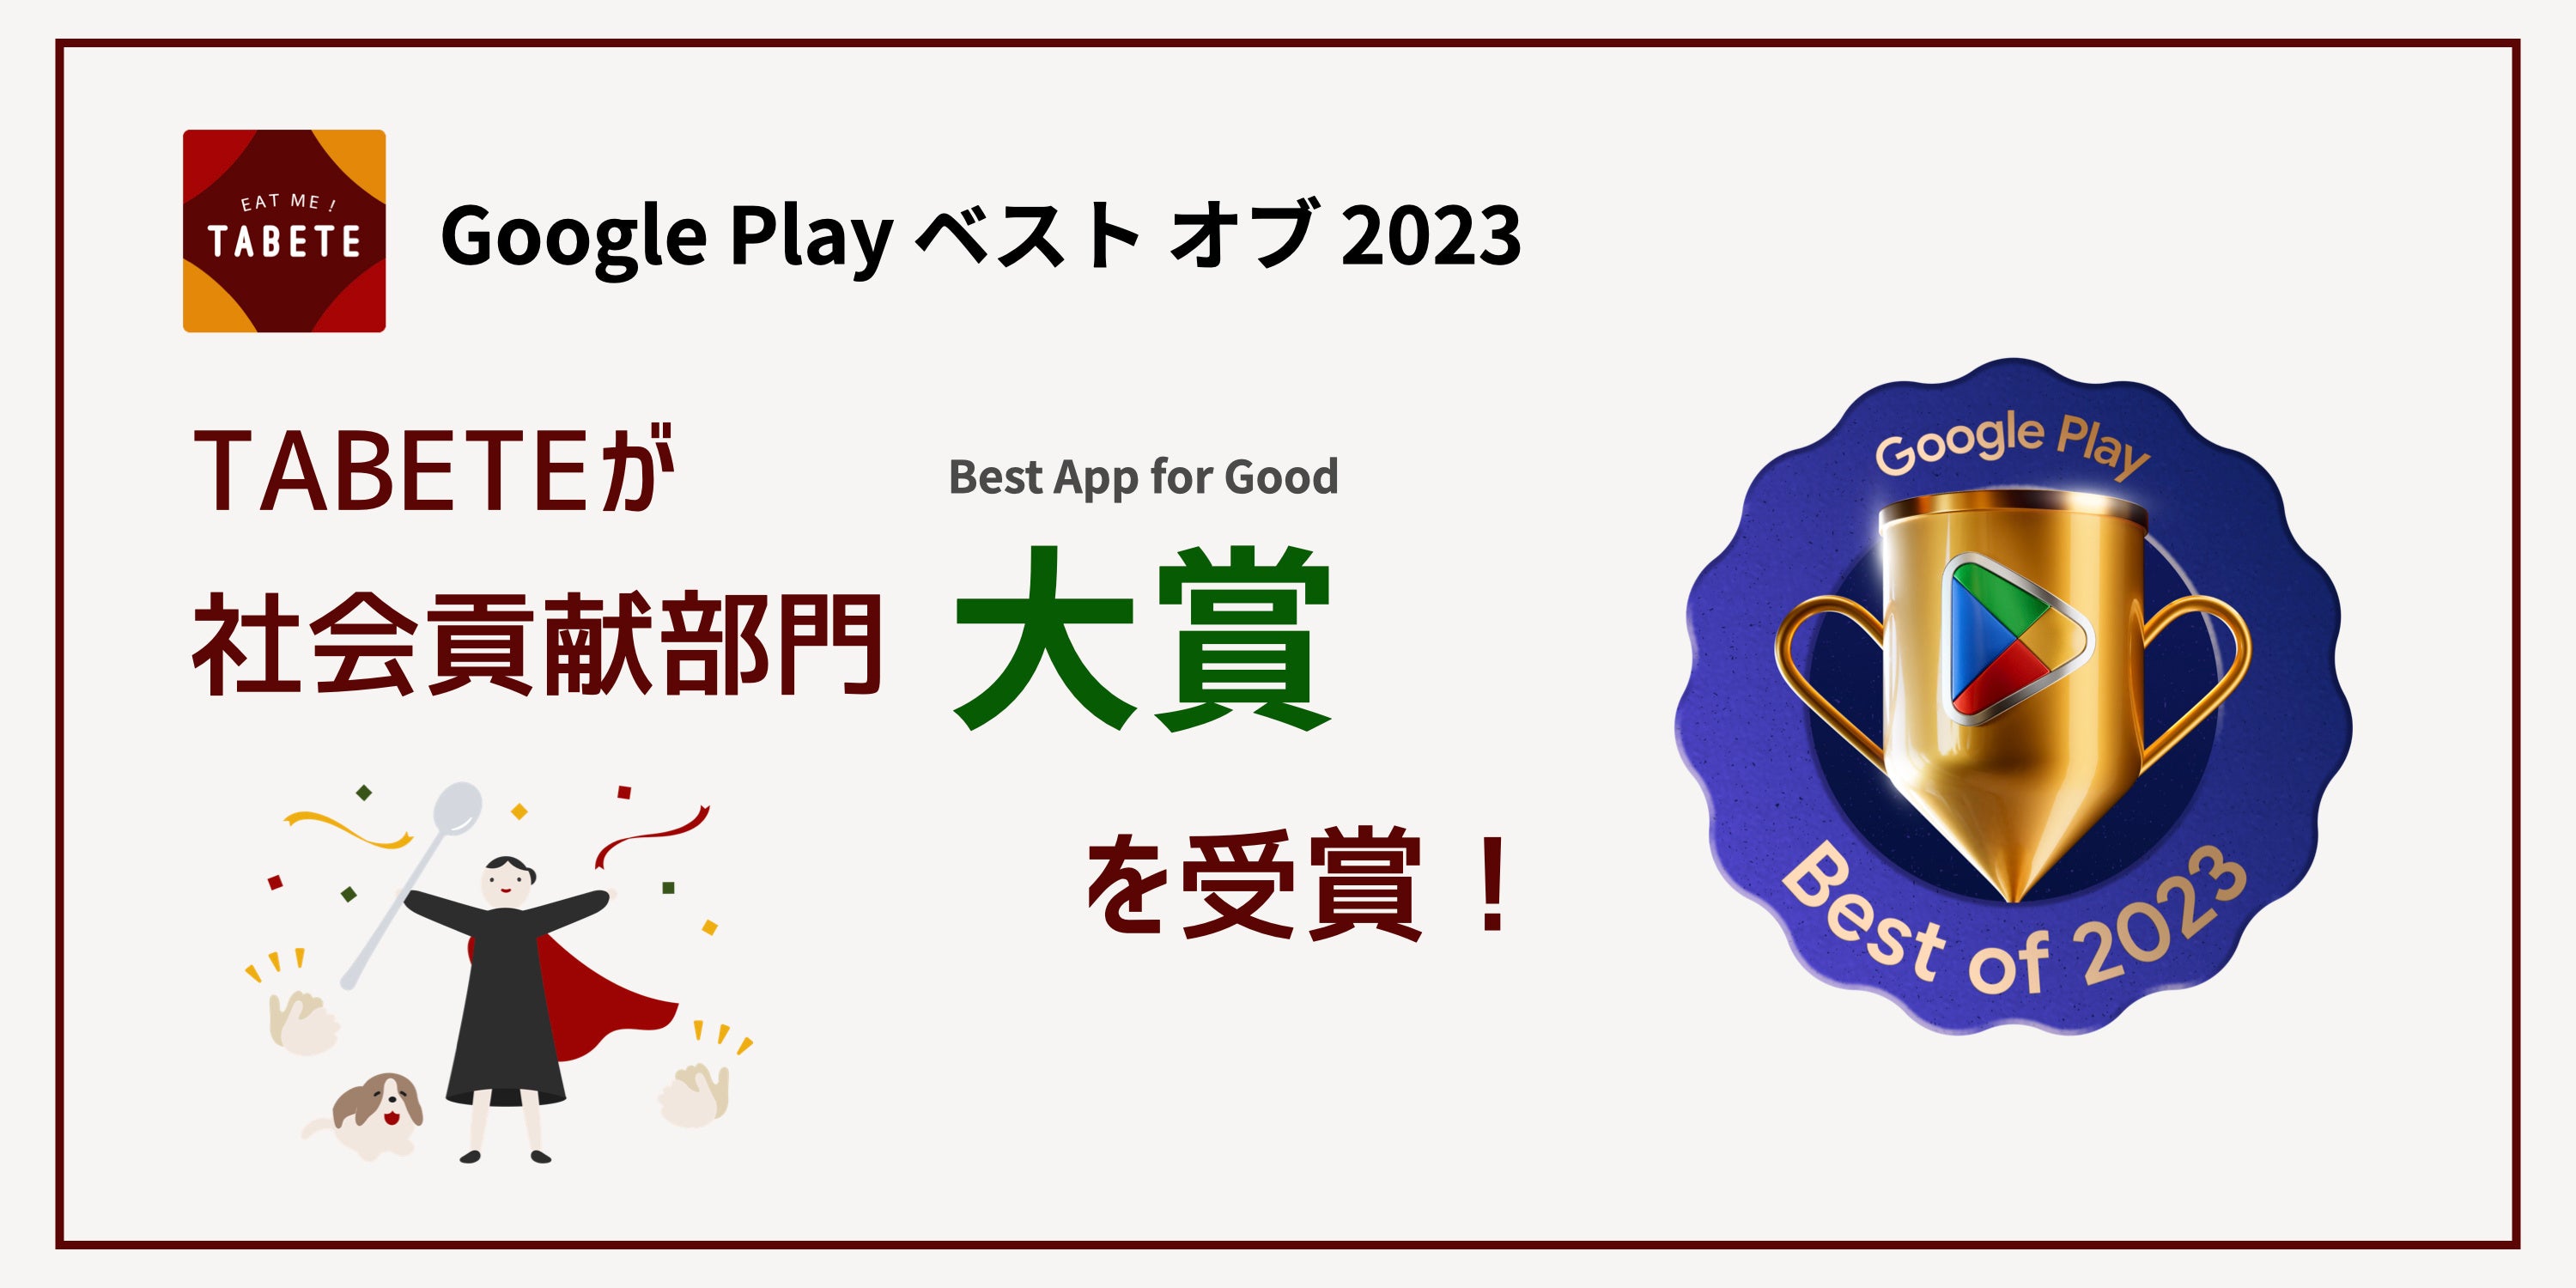 HiX팸T[rXuTABETEvAGoogle Play xXg Iu 2023 Љv  